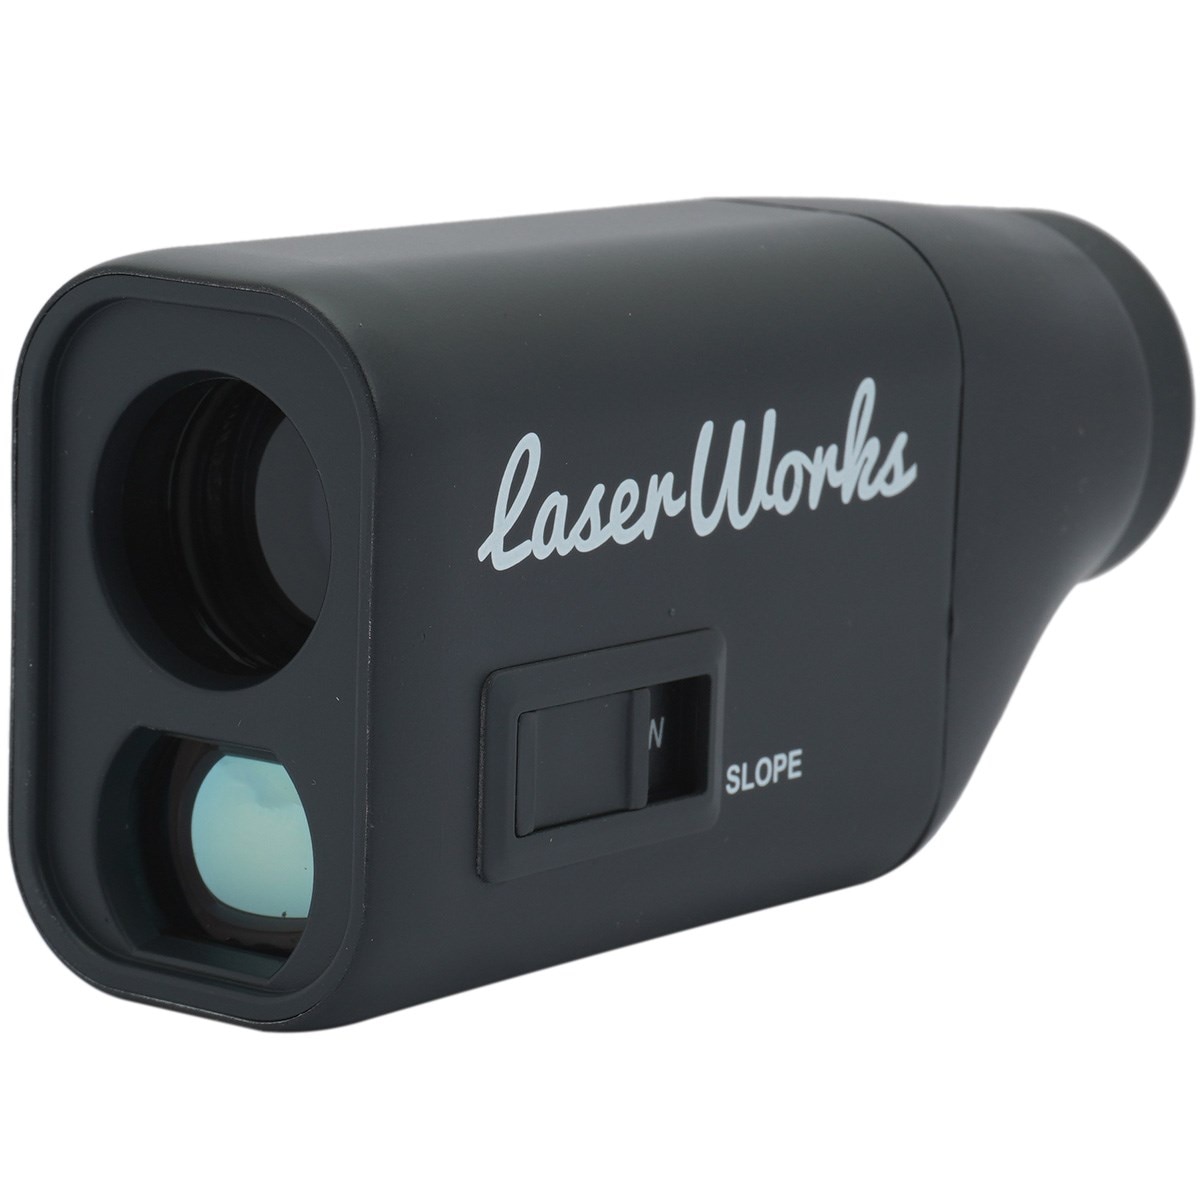 コンパクト距離測定器(距離測定器)|Laser Works(レーザーワークス)の 